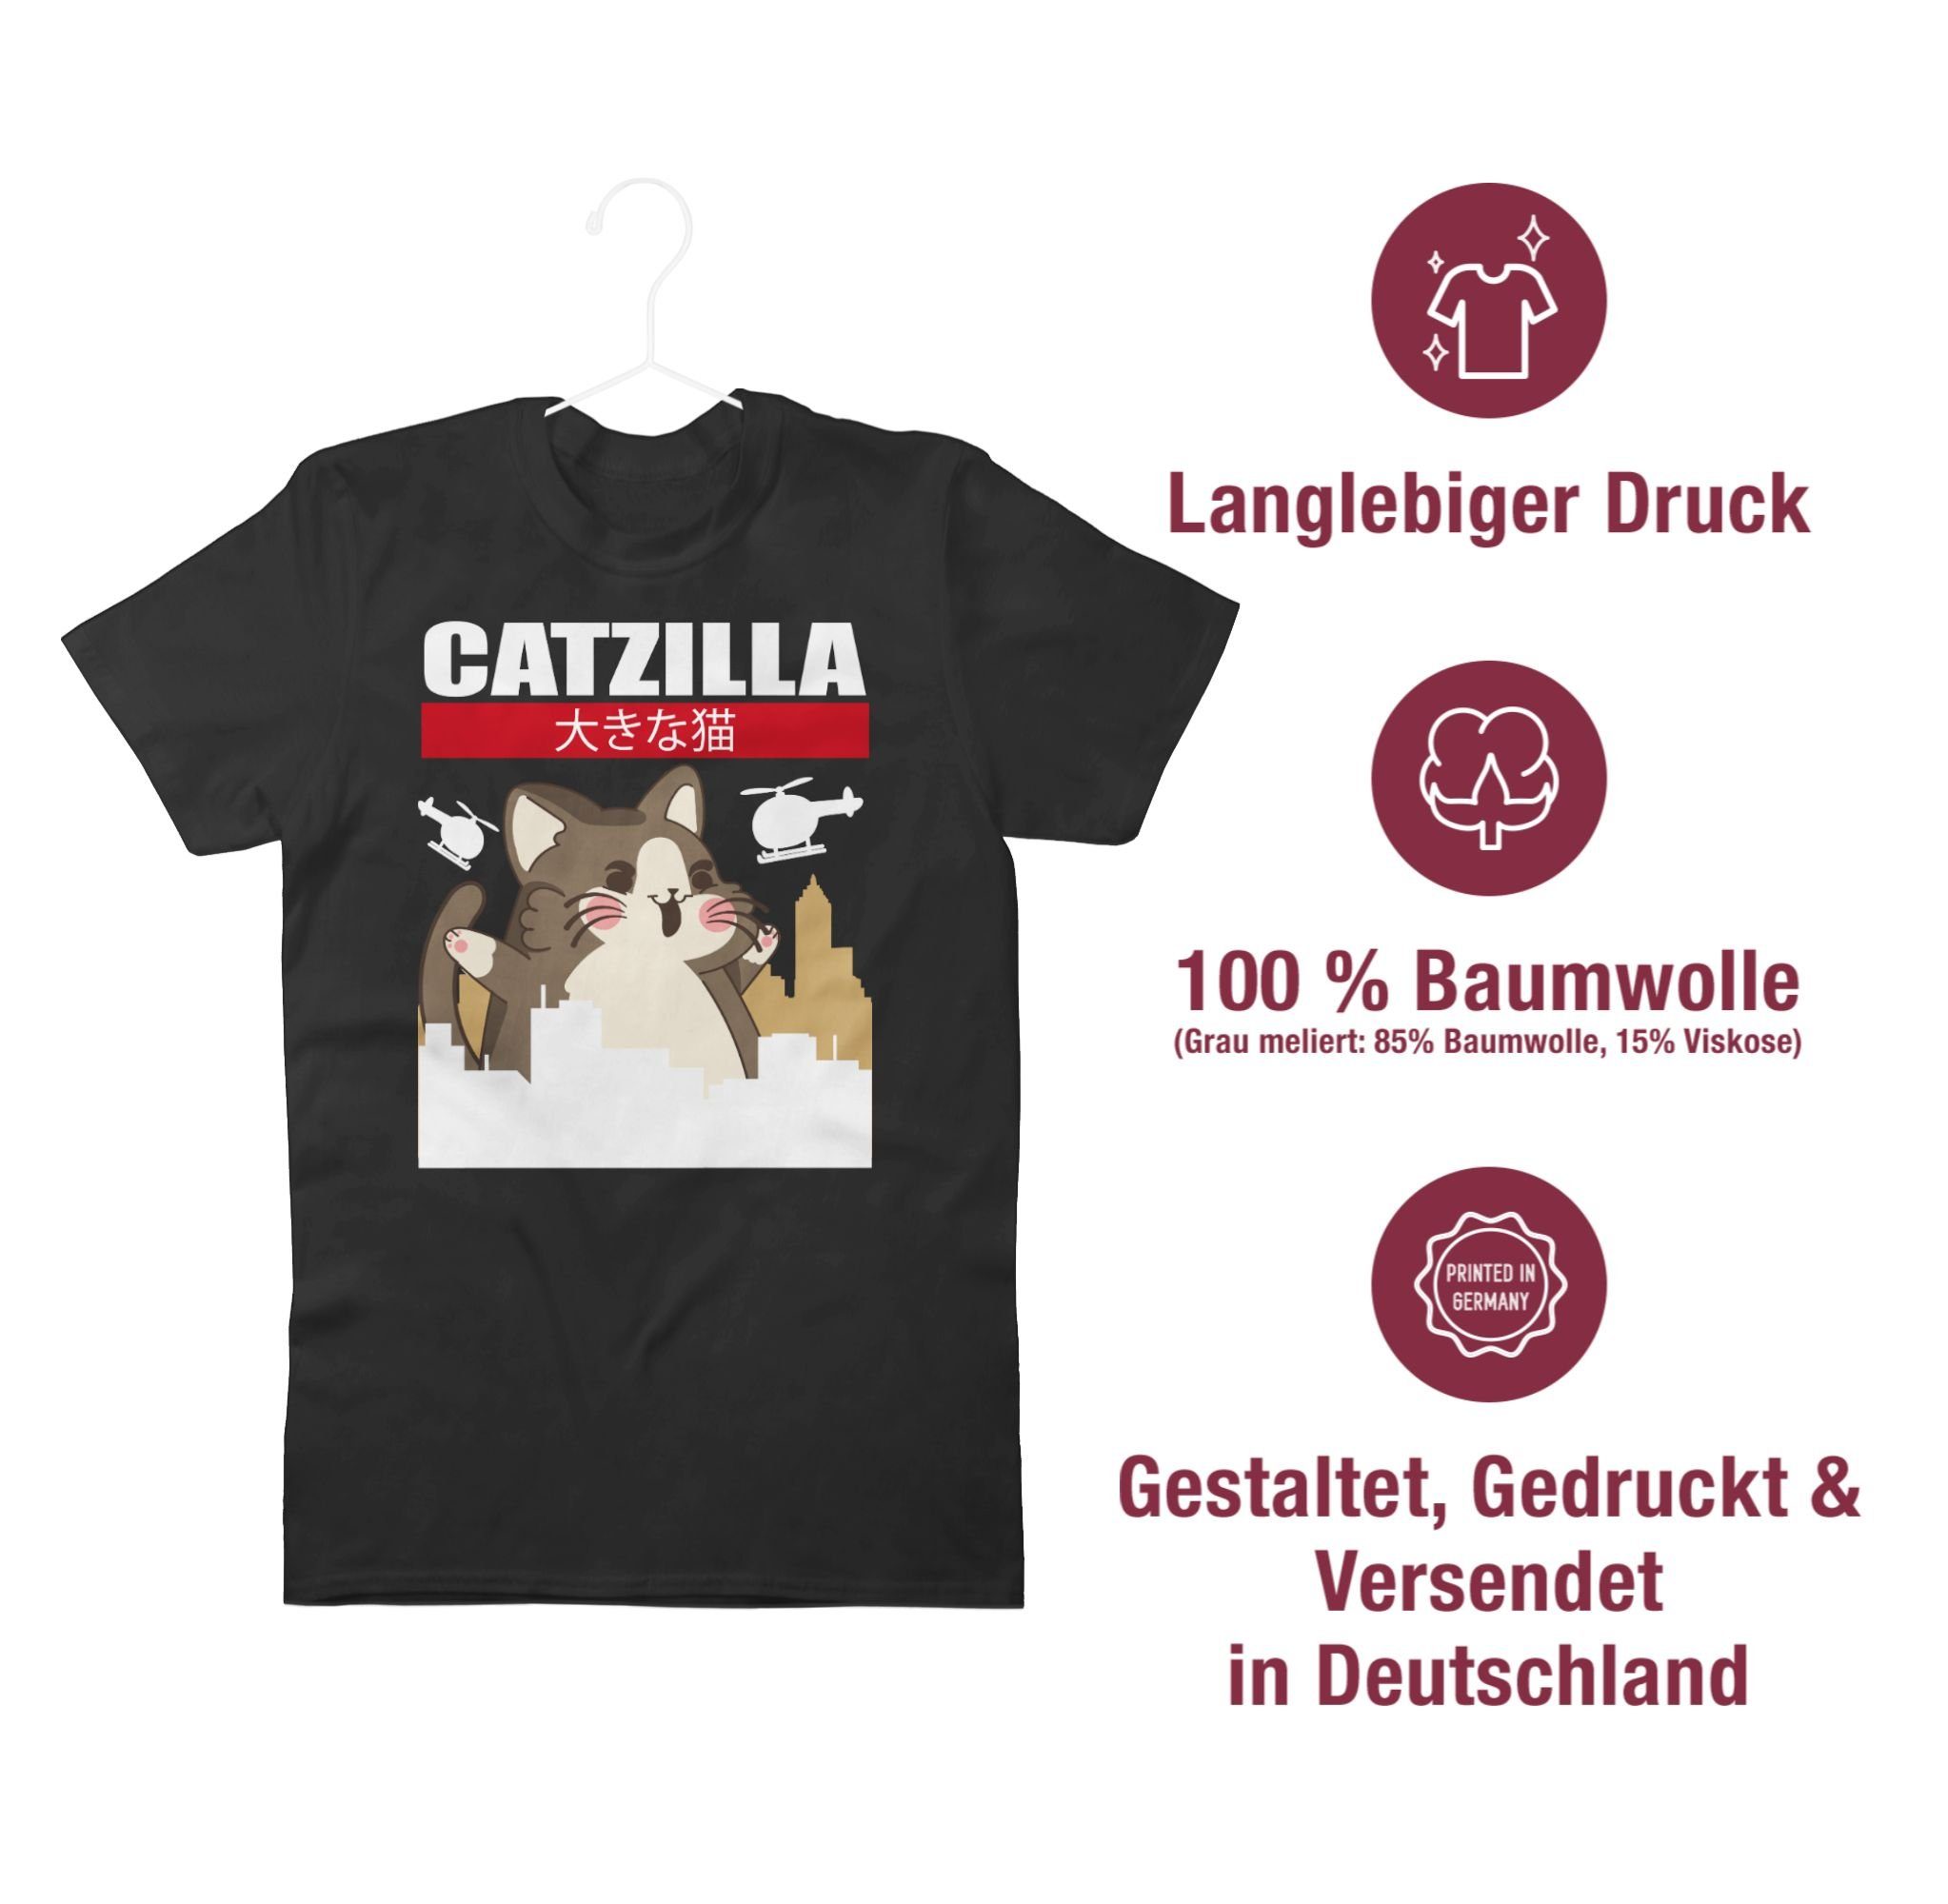 Geschenke Schwarz Shirtracer Anime Big Cat Catzilla T-Shirt 1 -